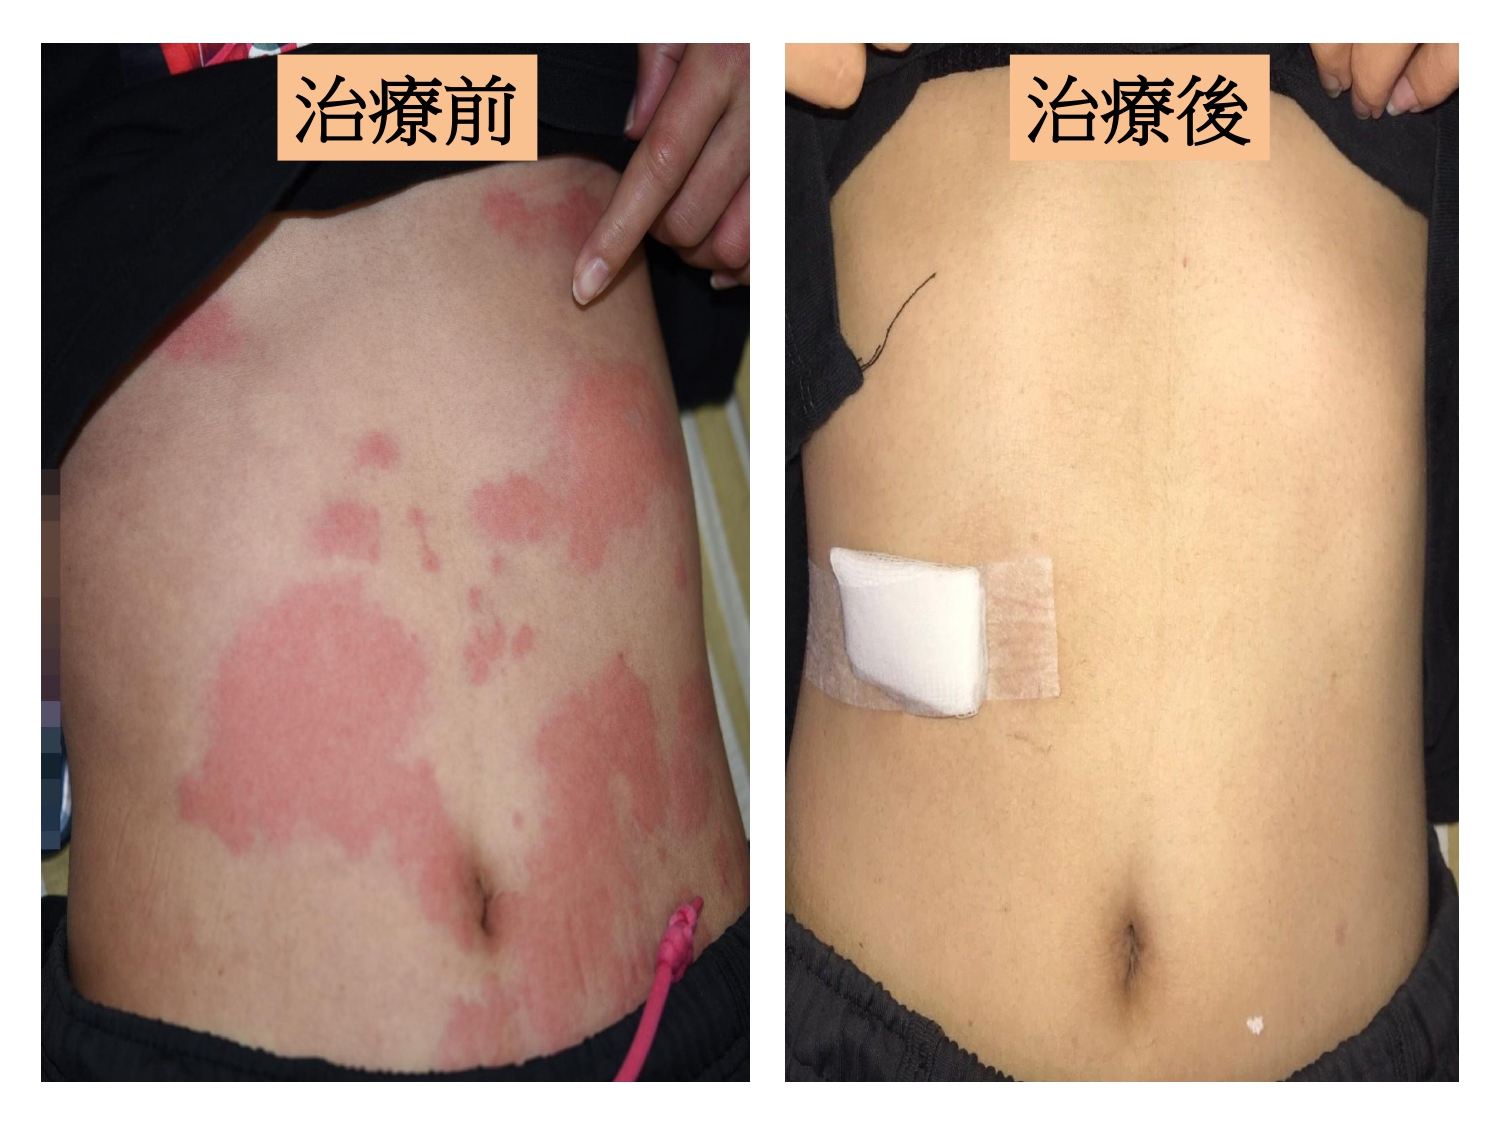 病患治療前（左）身體多處蕁麻疹樣皮疹，伴隨搔癢燒灼感。治療一週後（右），紅疹幾乎消失，只留下發炎後色素沉澱。圖/台中仁愛醫院提供